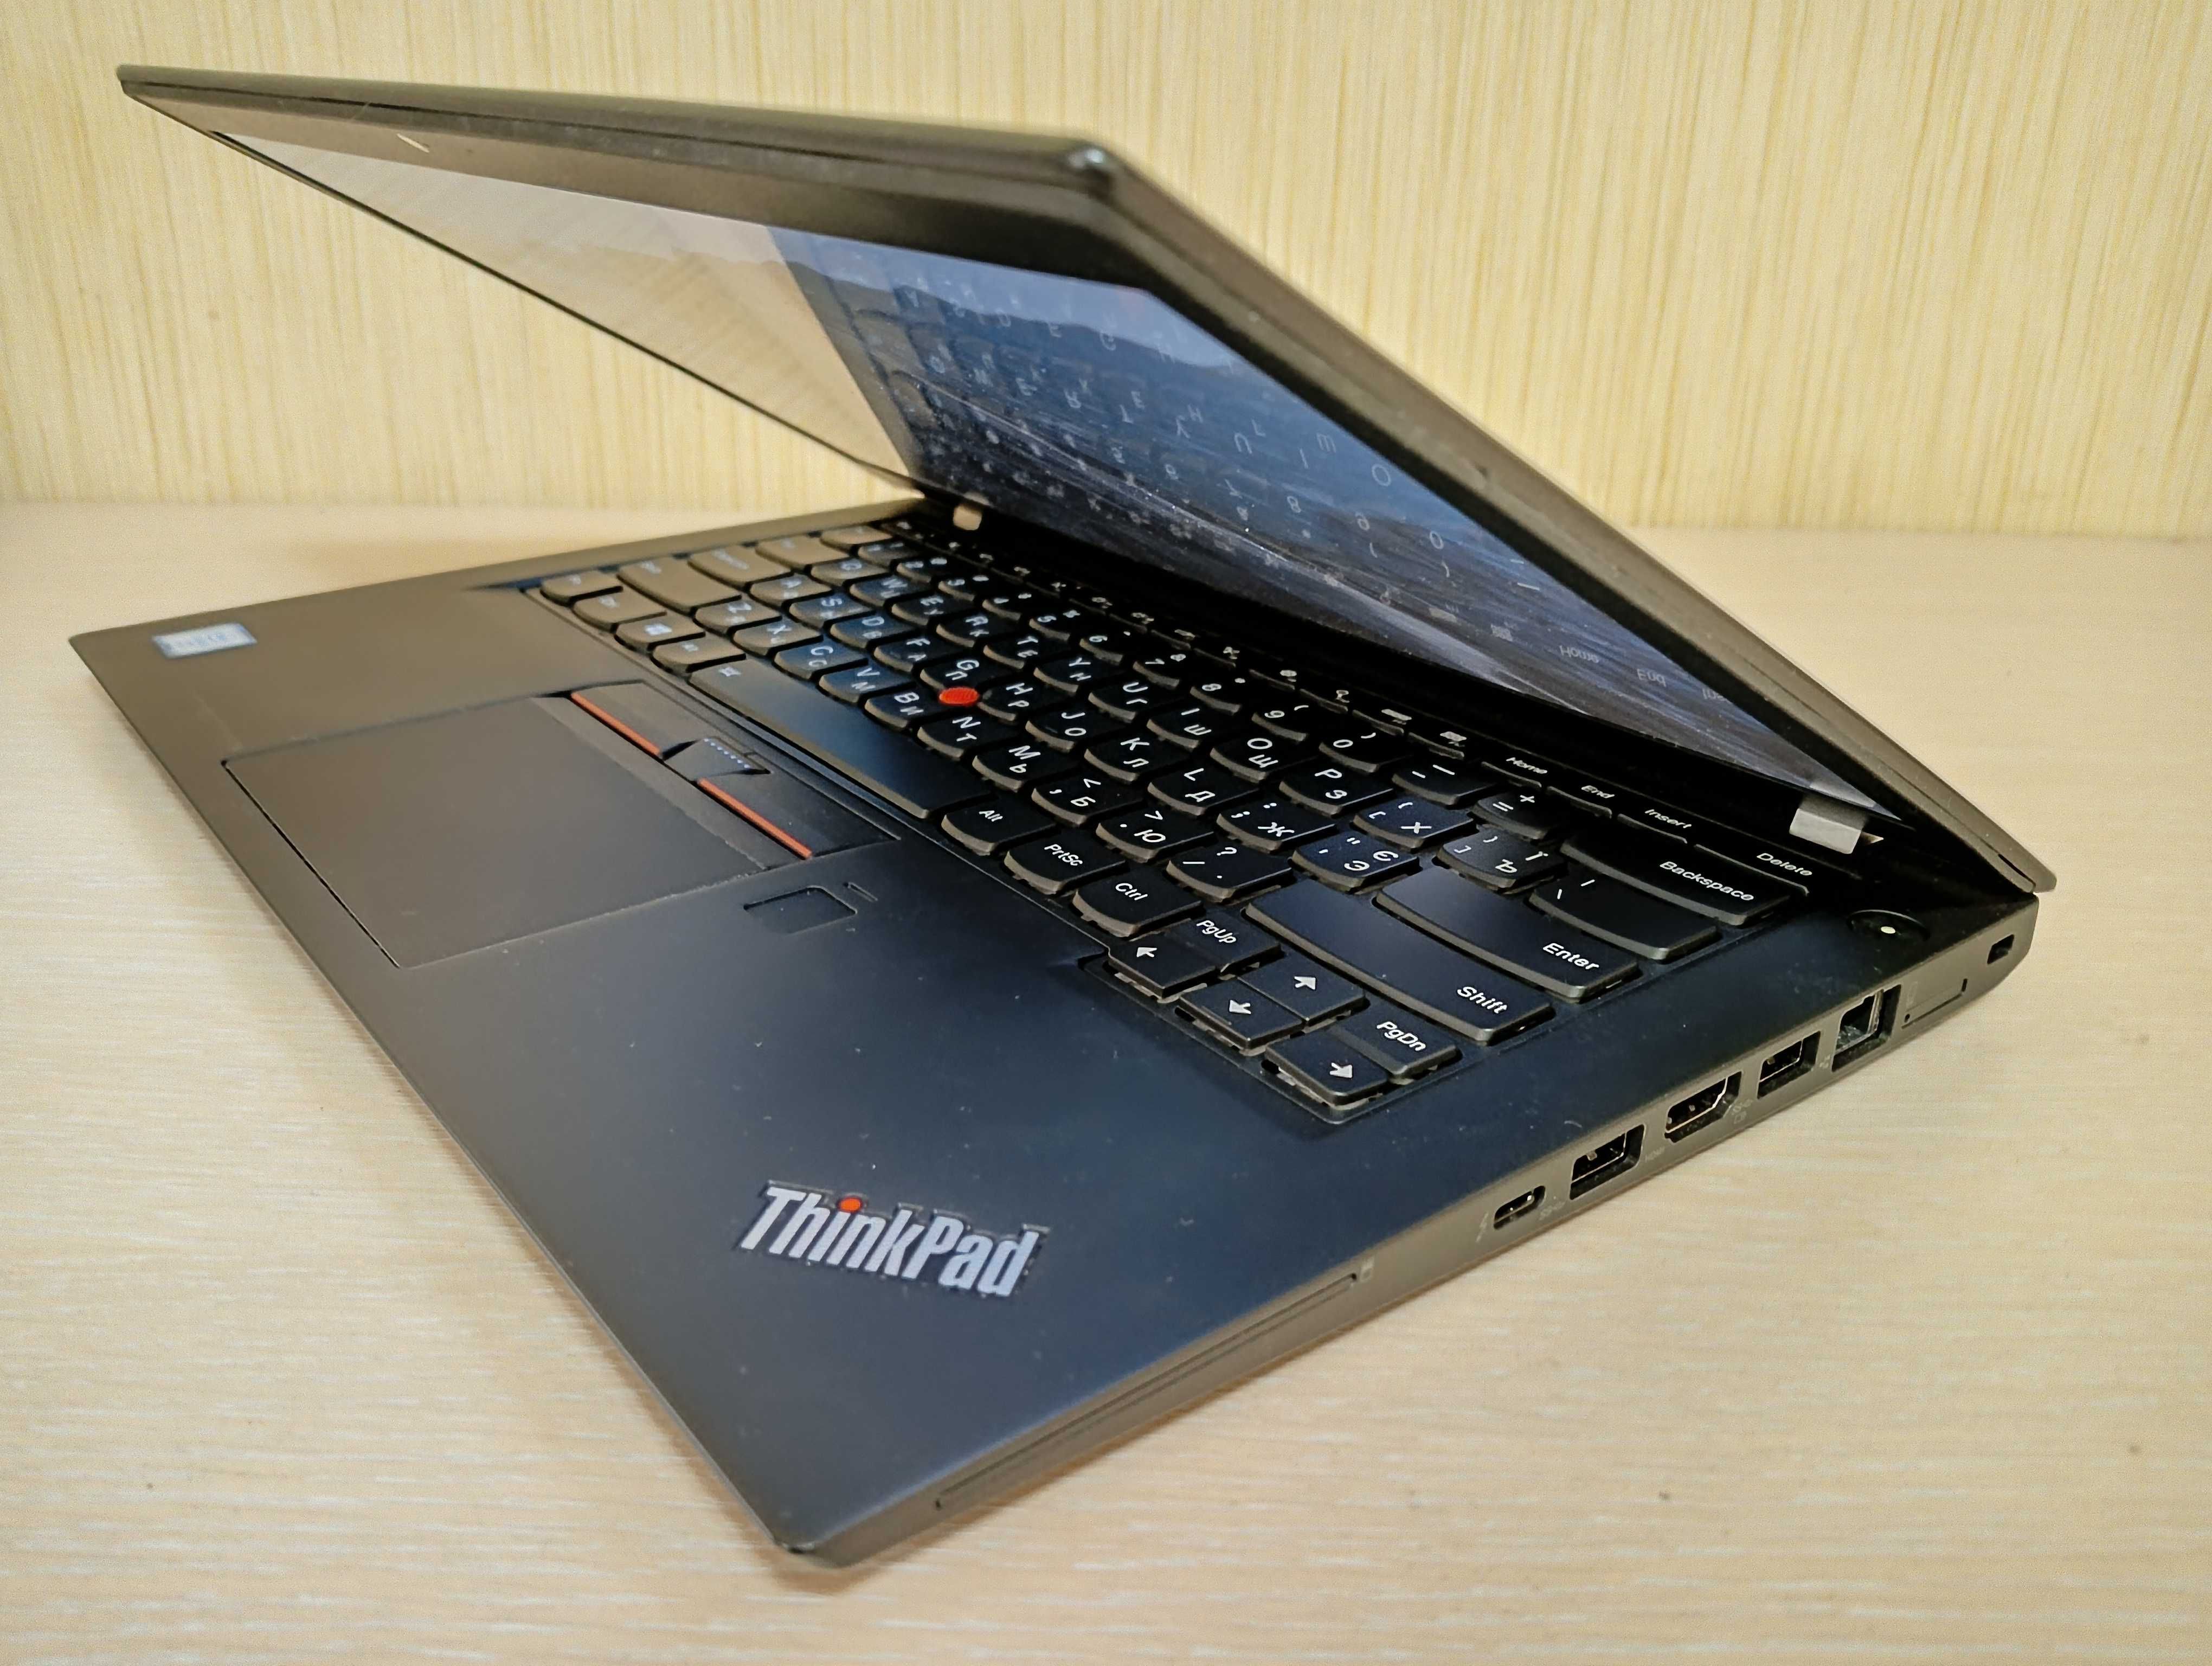 Lenovo ThinkPad T460S (i5-6200u/8Gb/240Gb SSD/IntelHD 520)FHD IPS